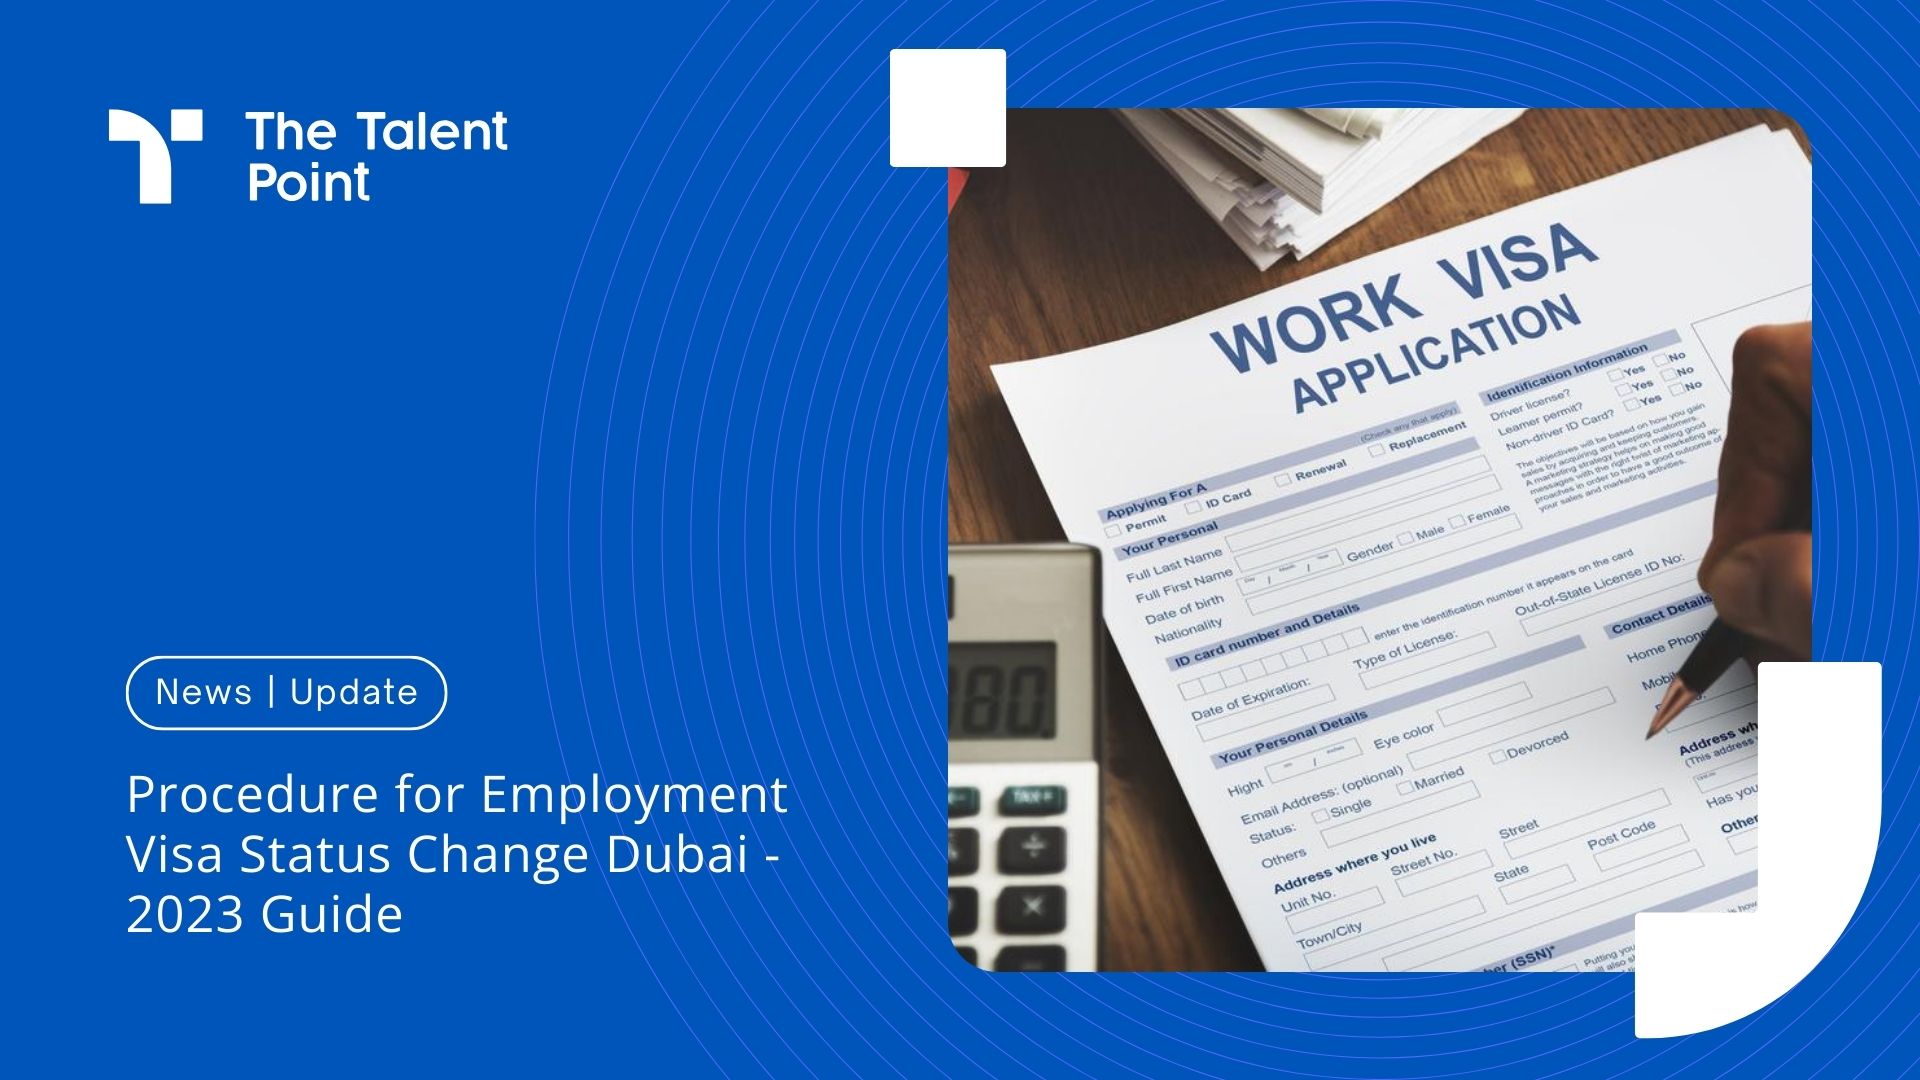 Understanding Employment Visa Status Change Procedures in the UAE